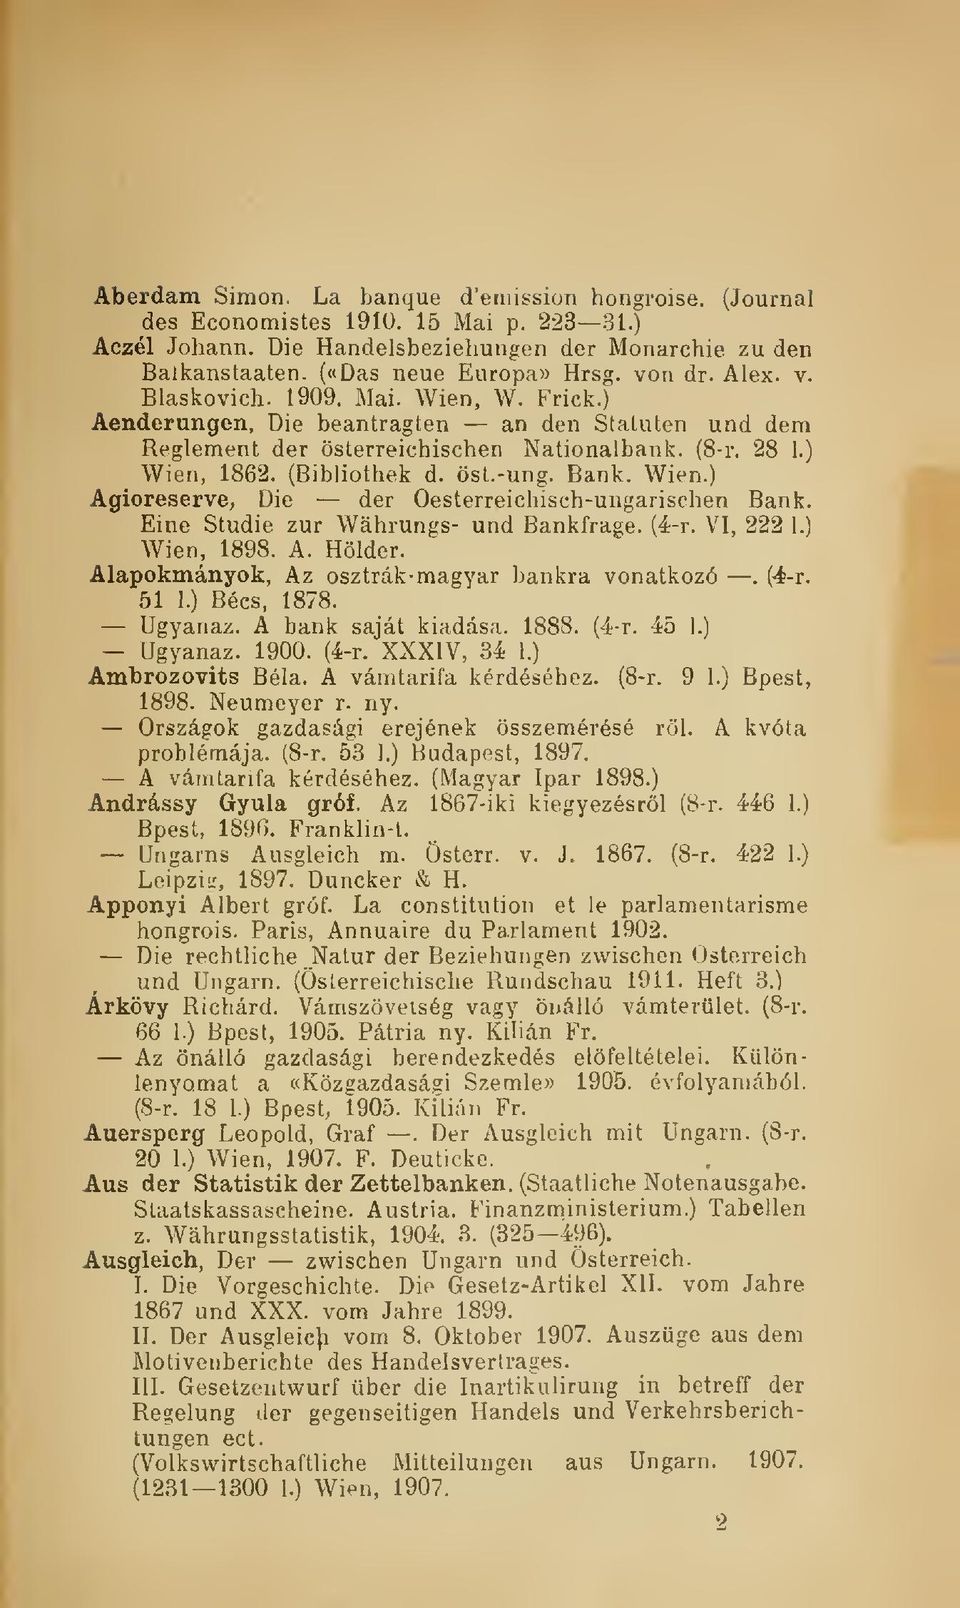 Bank. Wien.) _ Agioreserve, Die der Oesterreichisch-ungarischen Bank. Eine Studie zur Wáhrungs- und Bankfrage. (4-r. VI, 222 1.) Wien, 1898. A. Hölder.